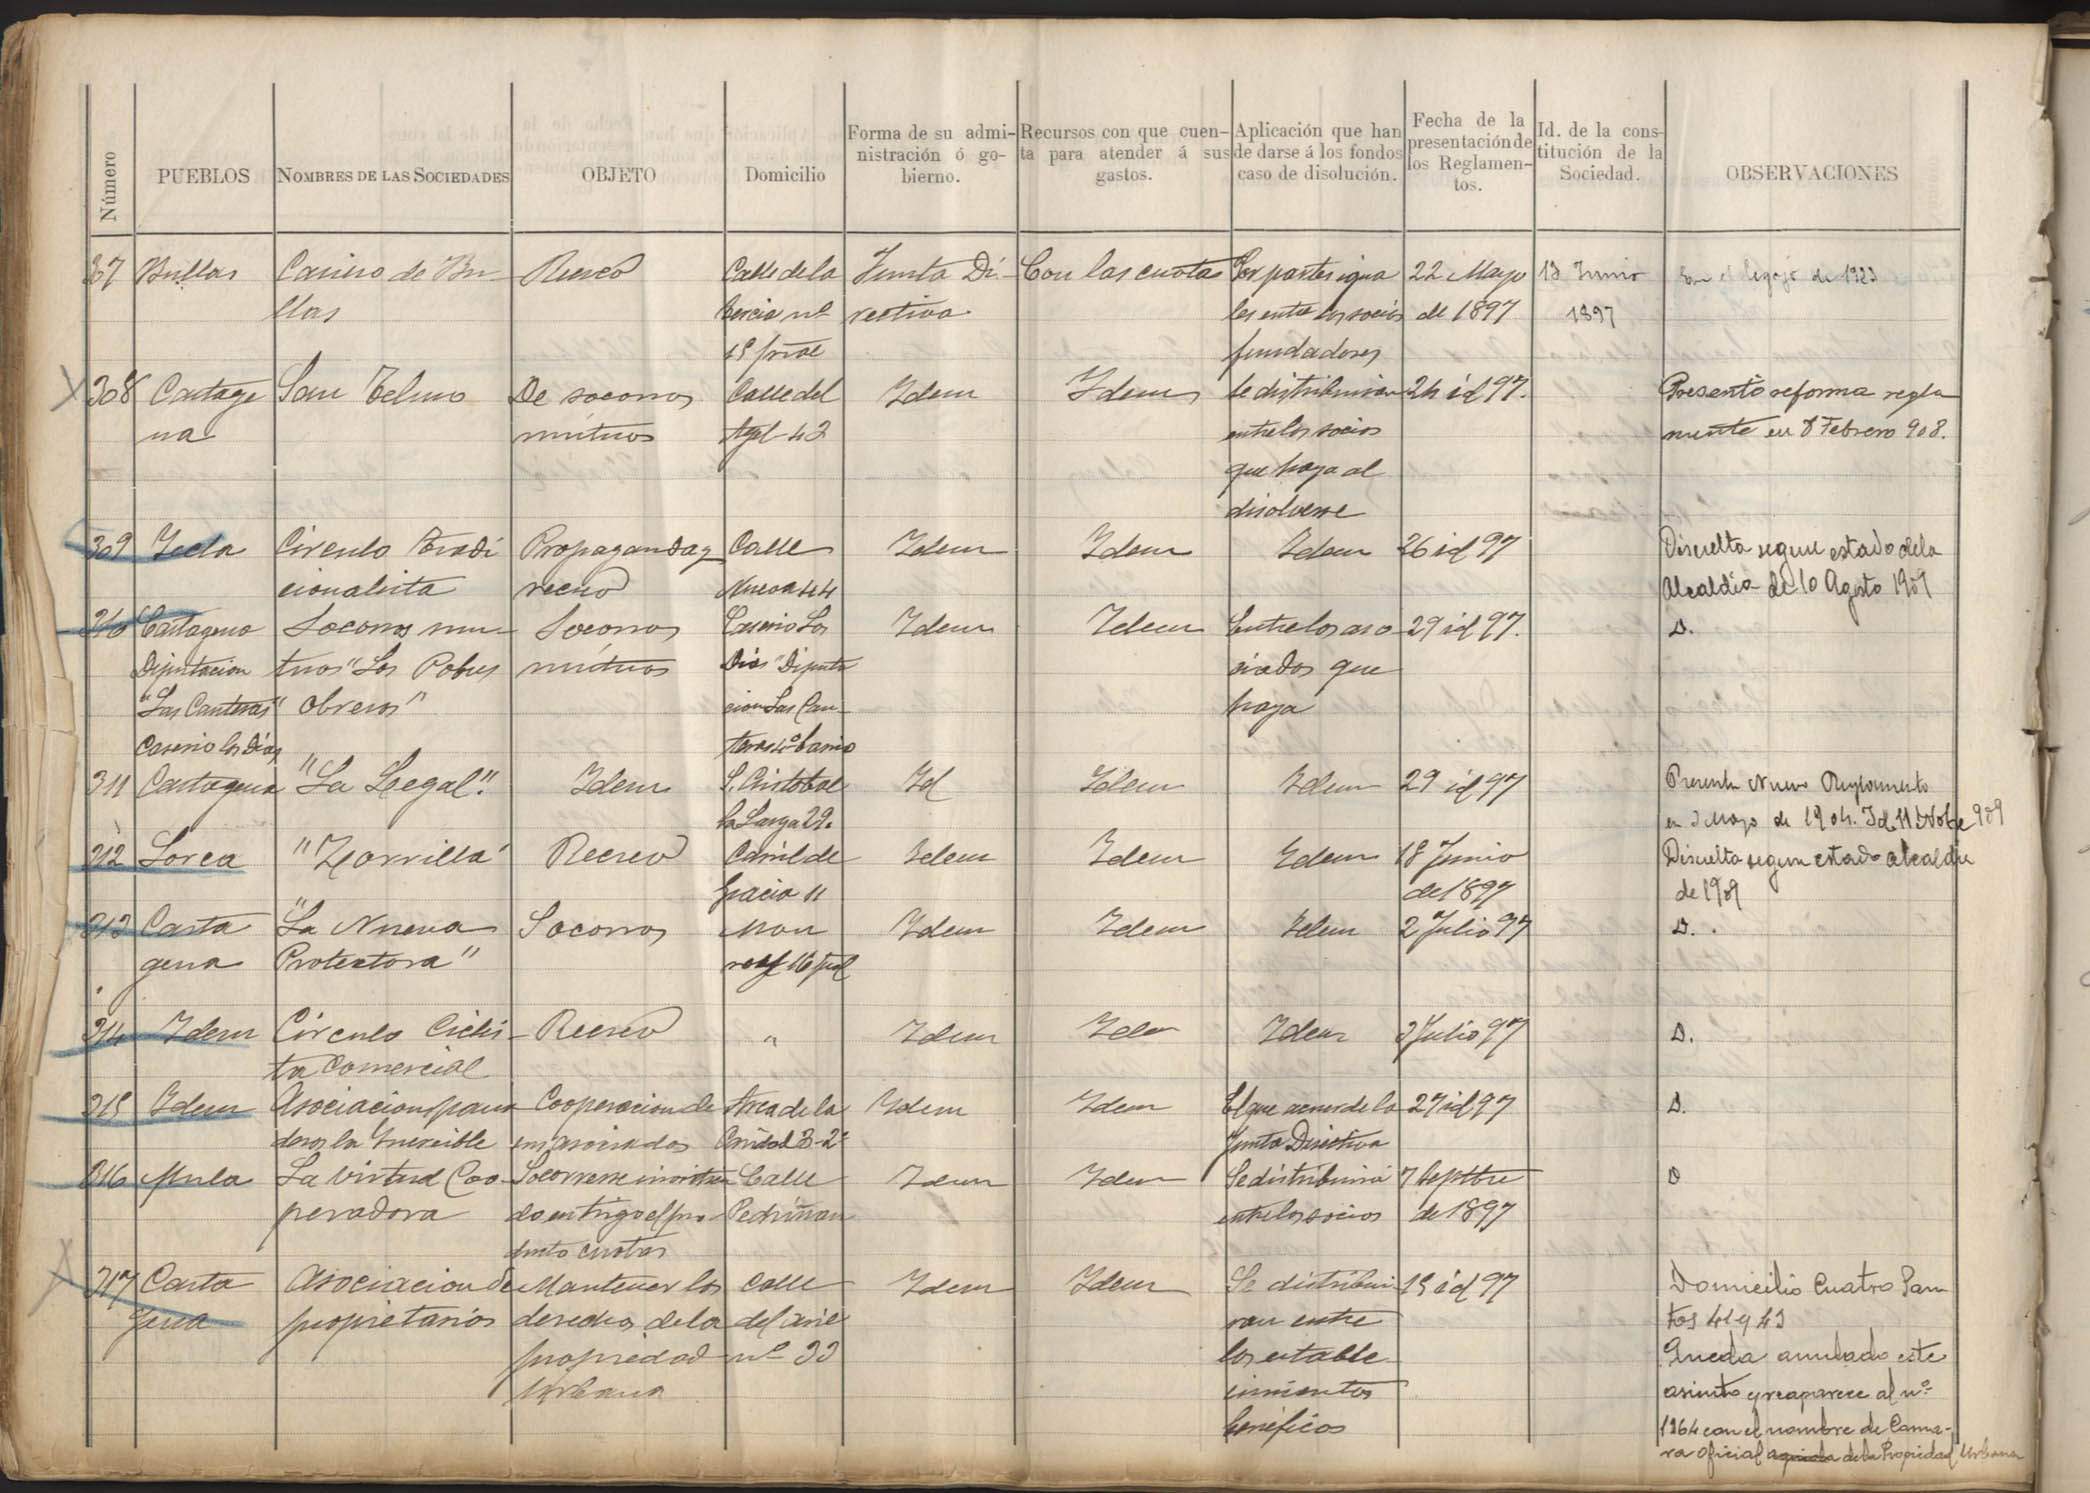 Registro de Asociaciones: nº 301-350. Años 1897-1899.